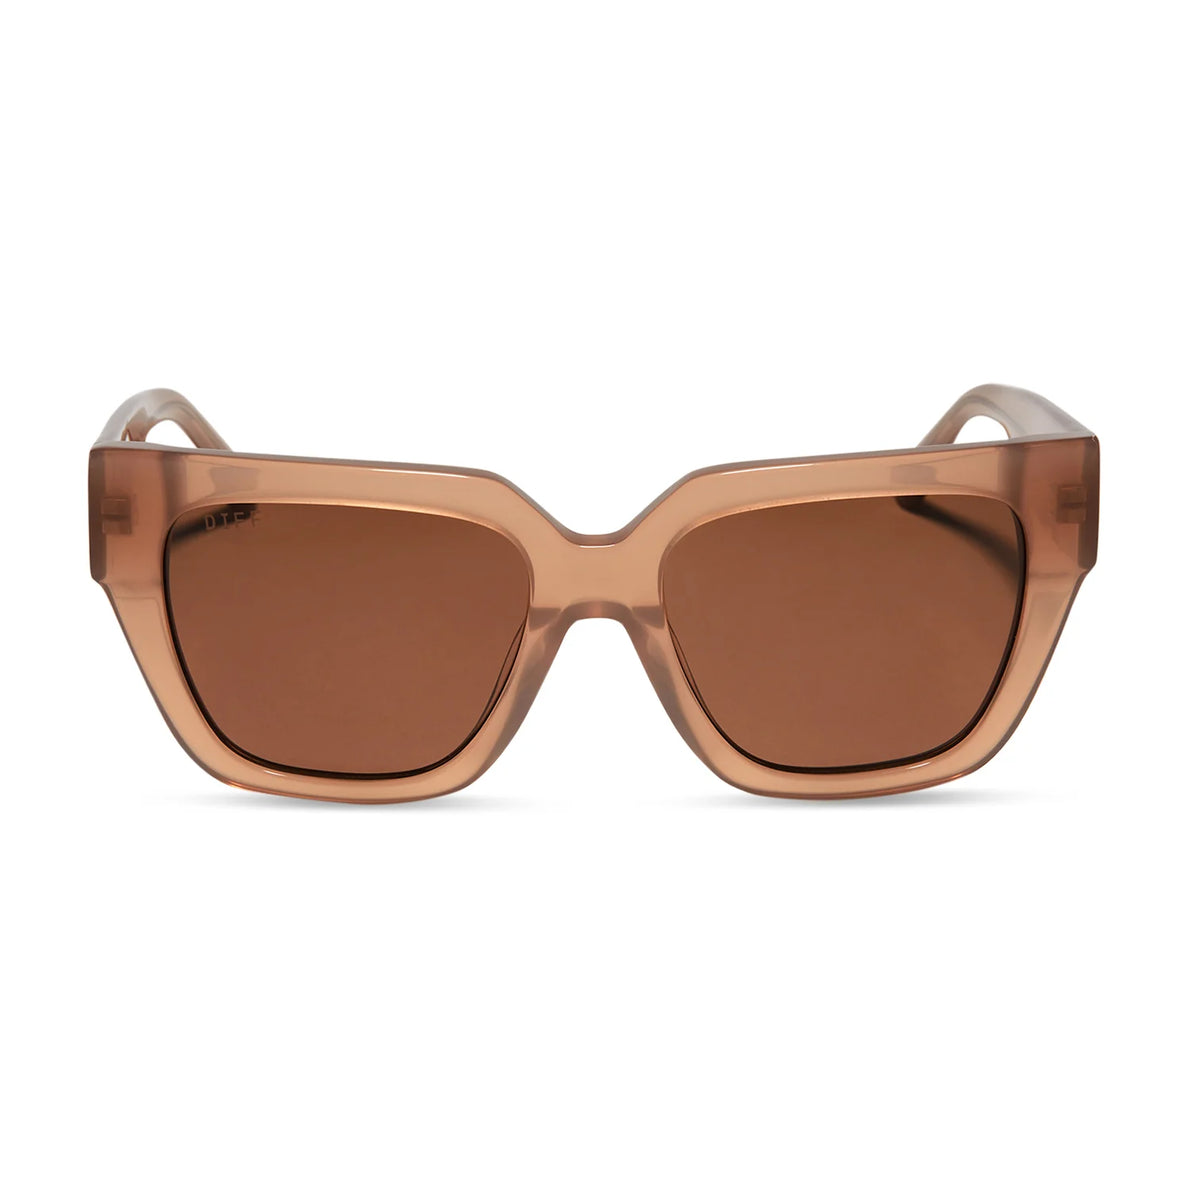 Diff Eyewear I Remi II Sunglasses - Warm Taupe + Brown Polarized